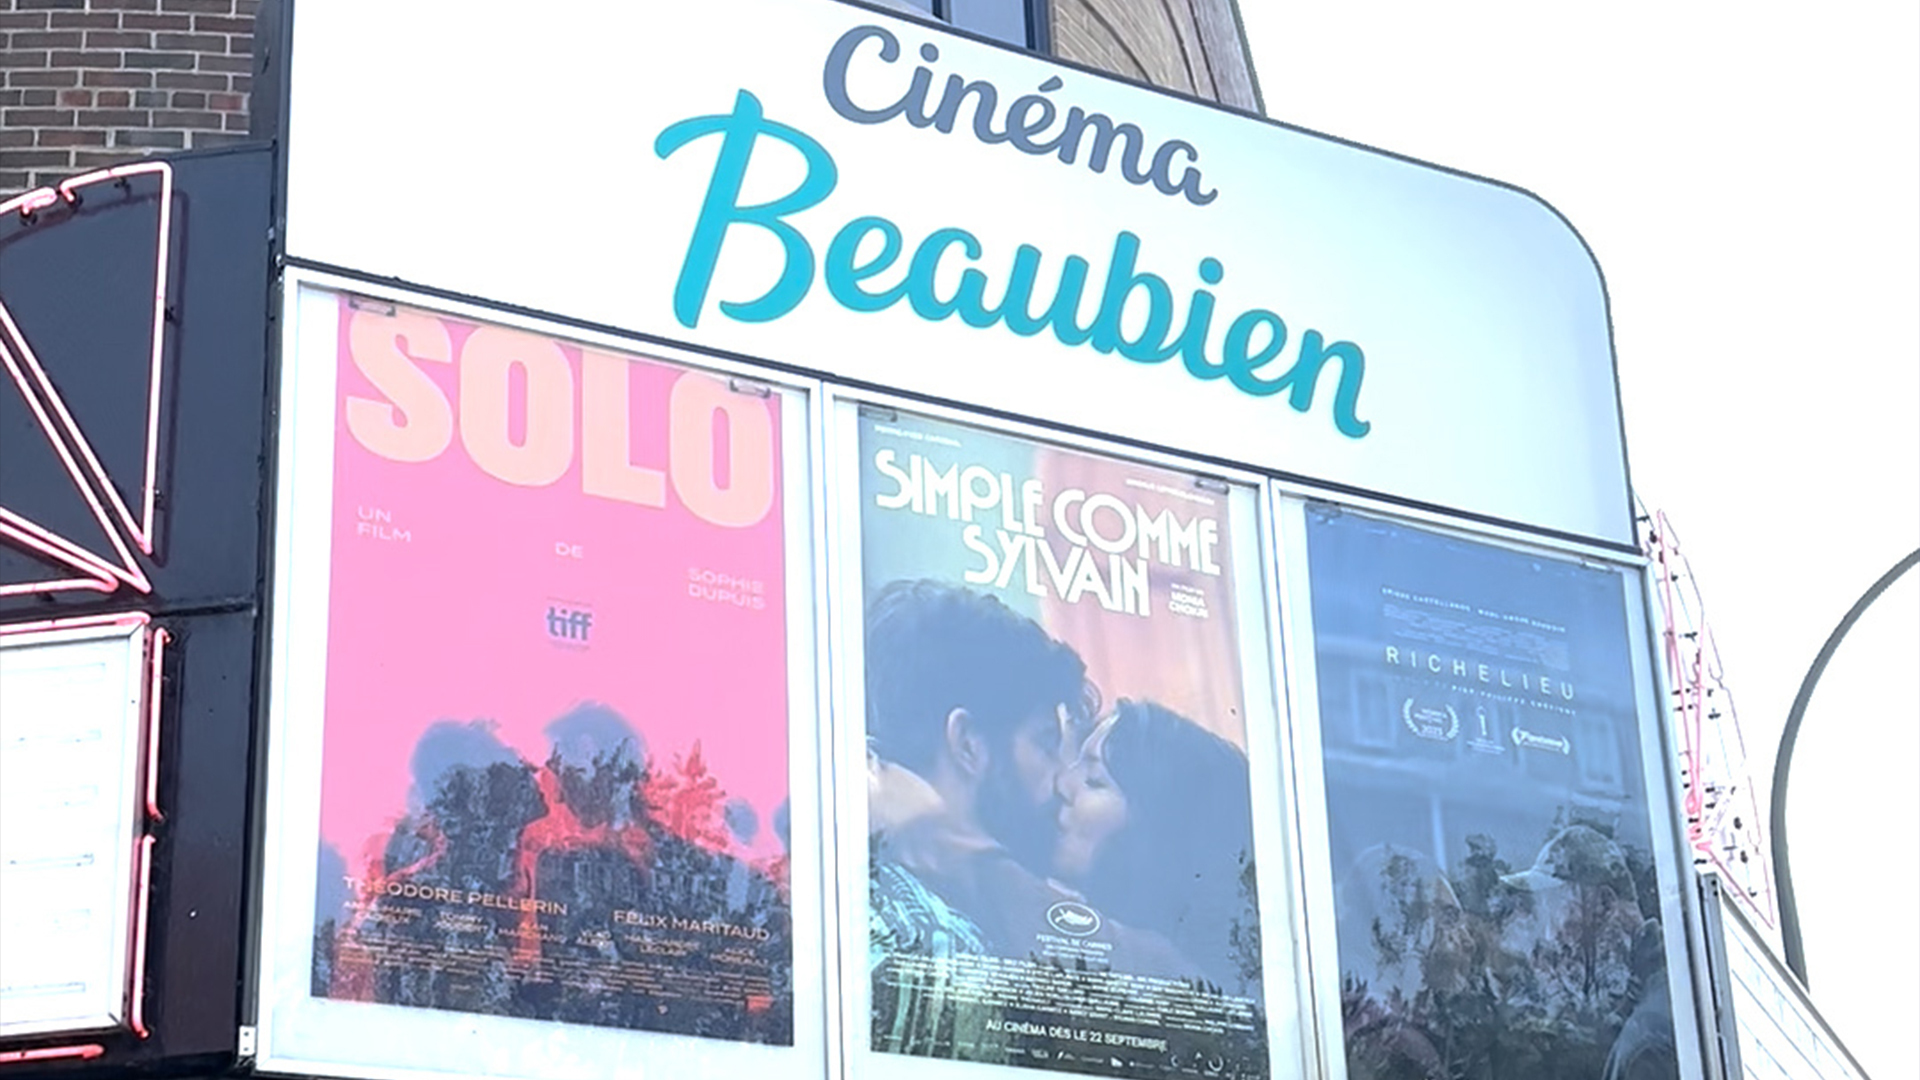 Les cinéastes féminines sont à l'honneur sur la marquise du Cinéma Beaubien ces jours-ci.